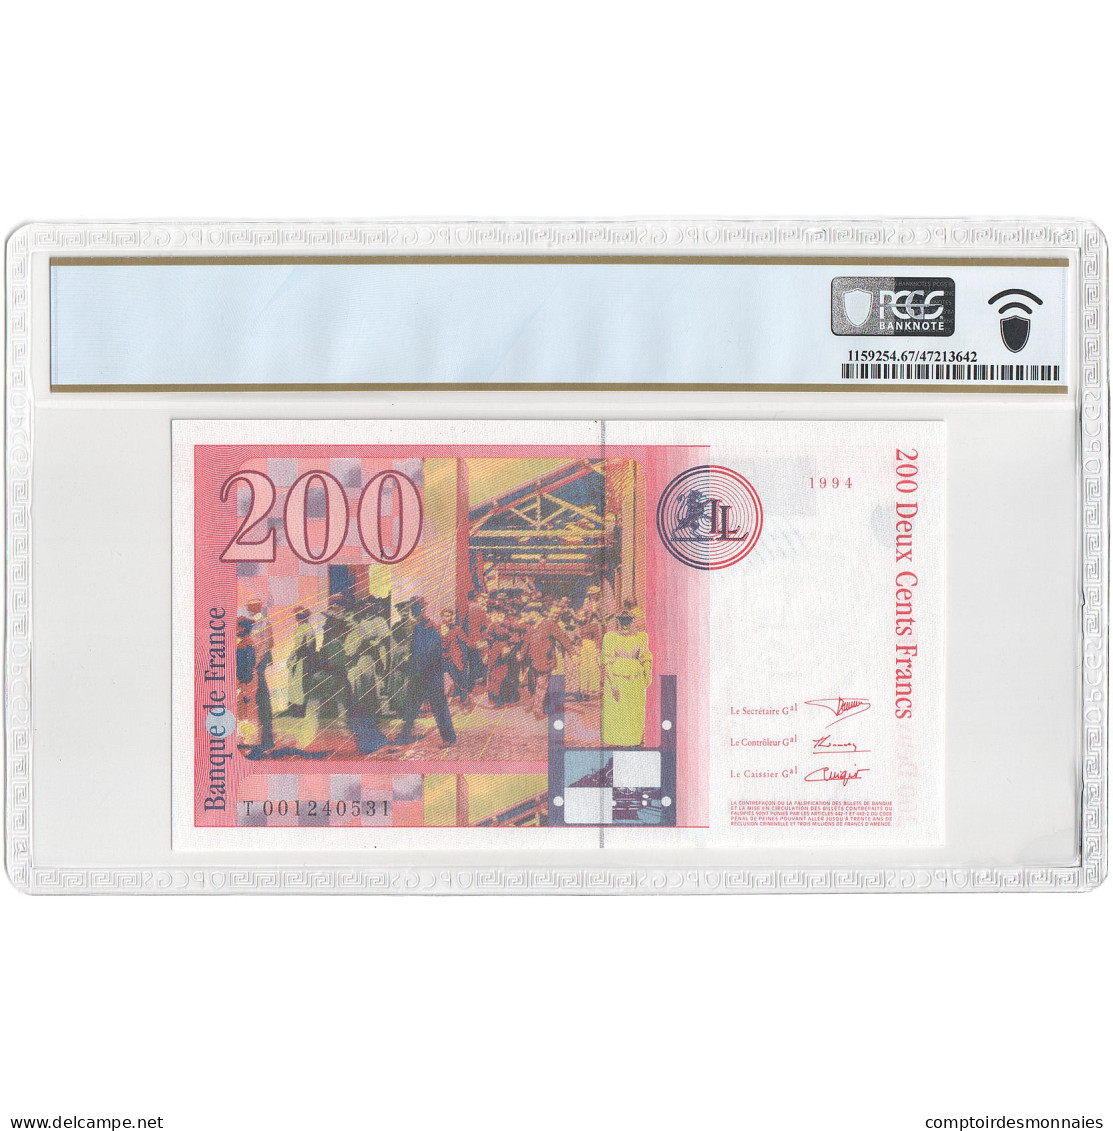 France, 200 Francs, Frères Lumière, T001240531, Unissued Bank Note, NEUF - Fiktive & Specimen